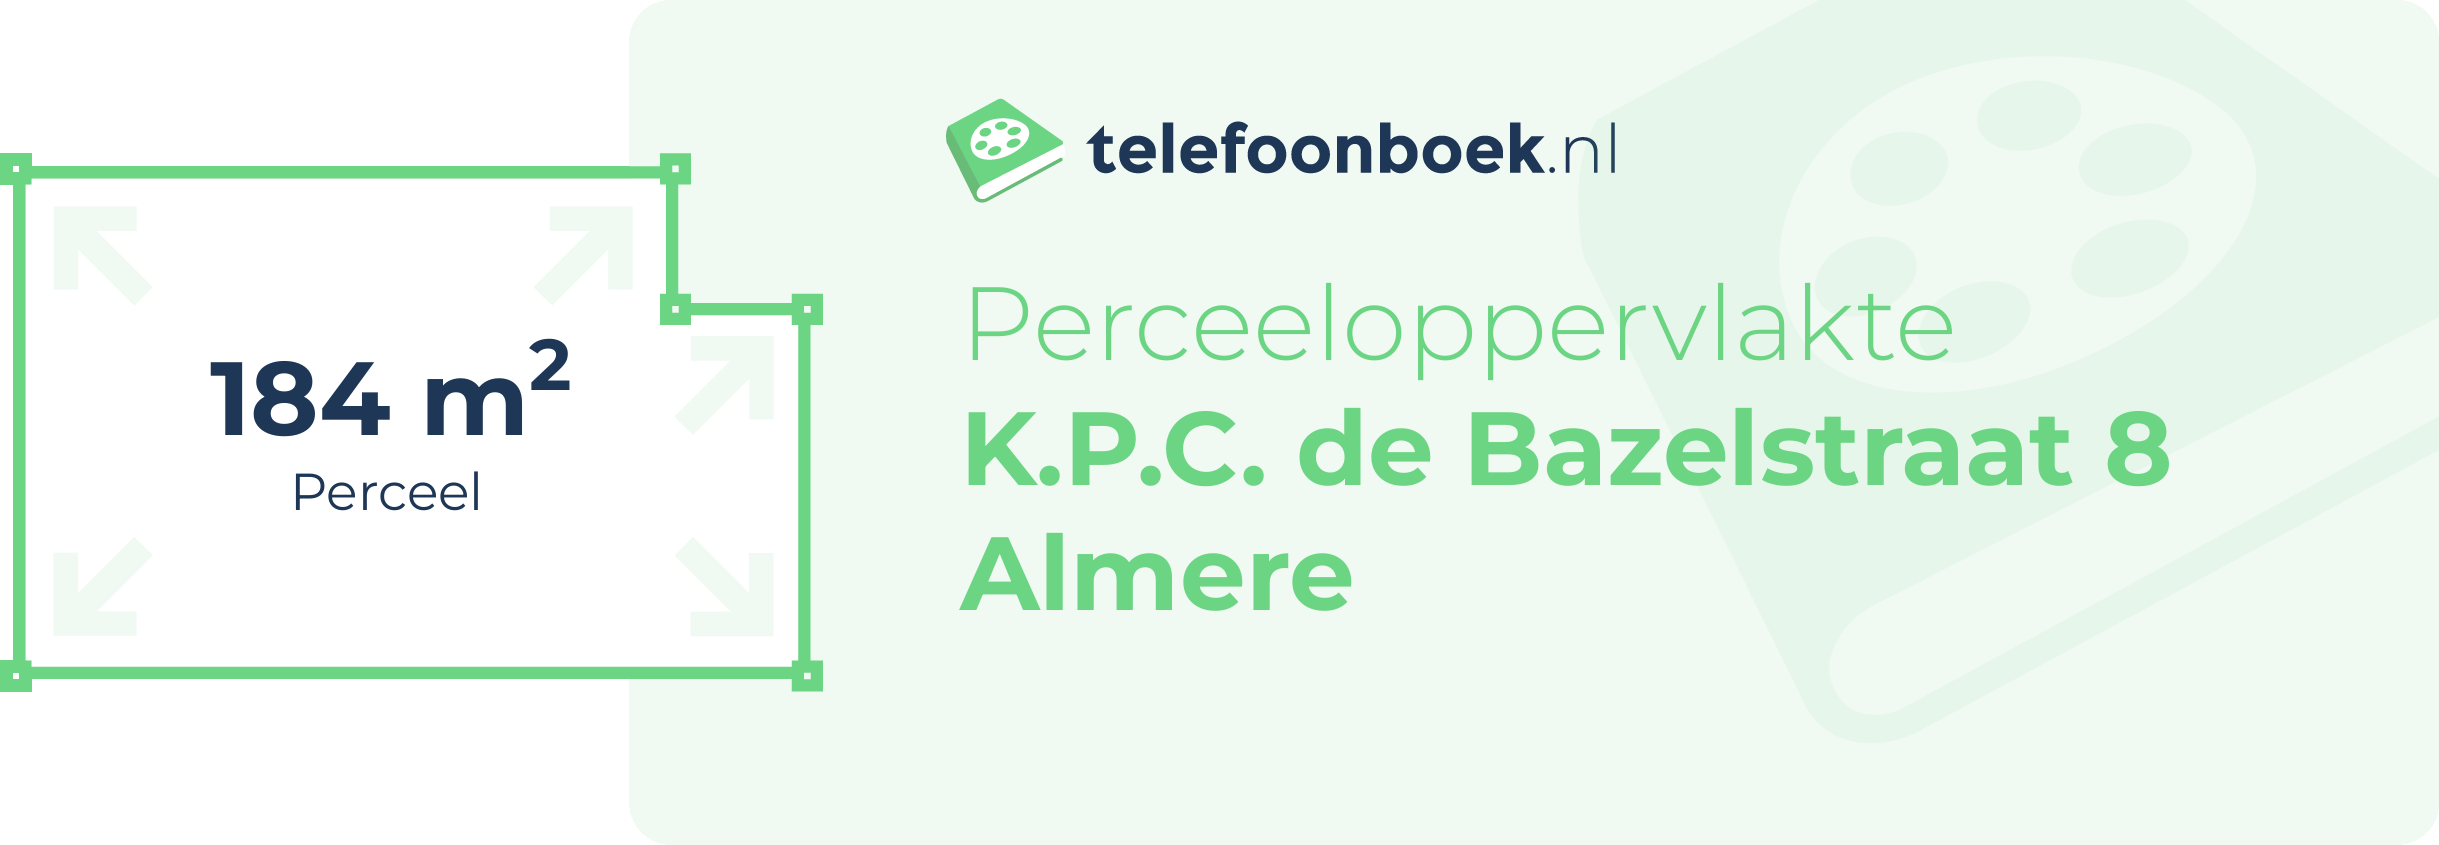 Perceeloppervlakte K.P.C. De Bazelstraat 8 Almere